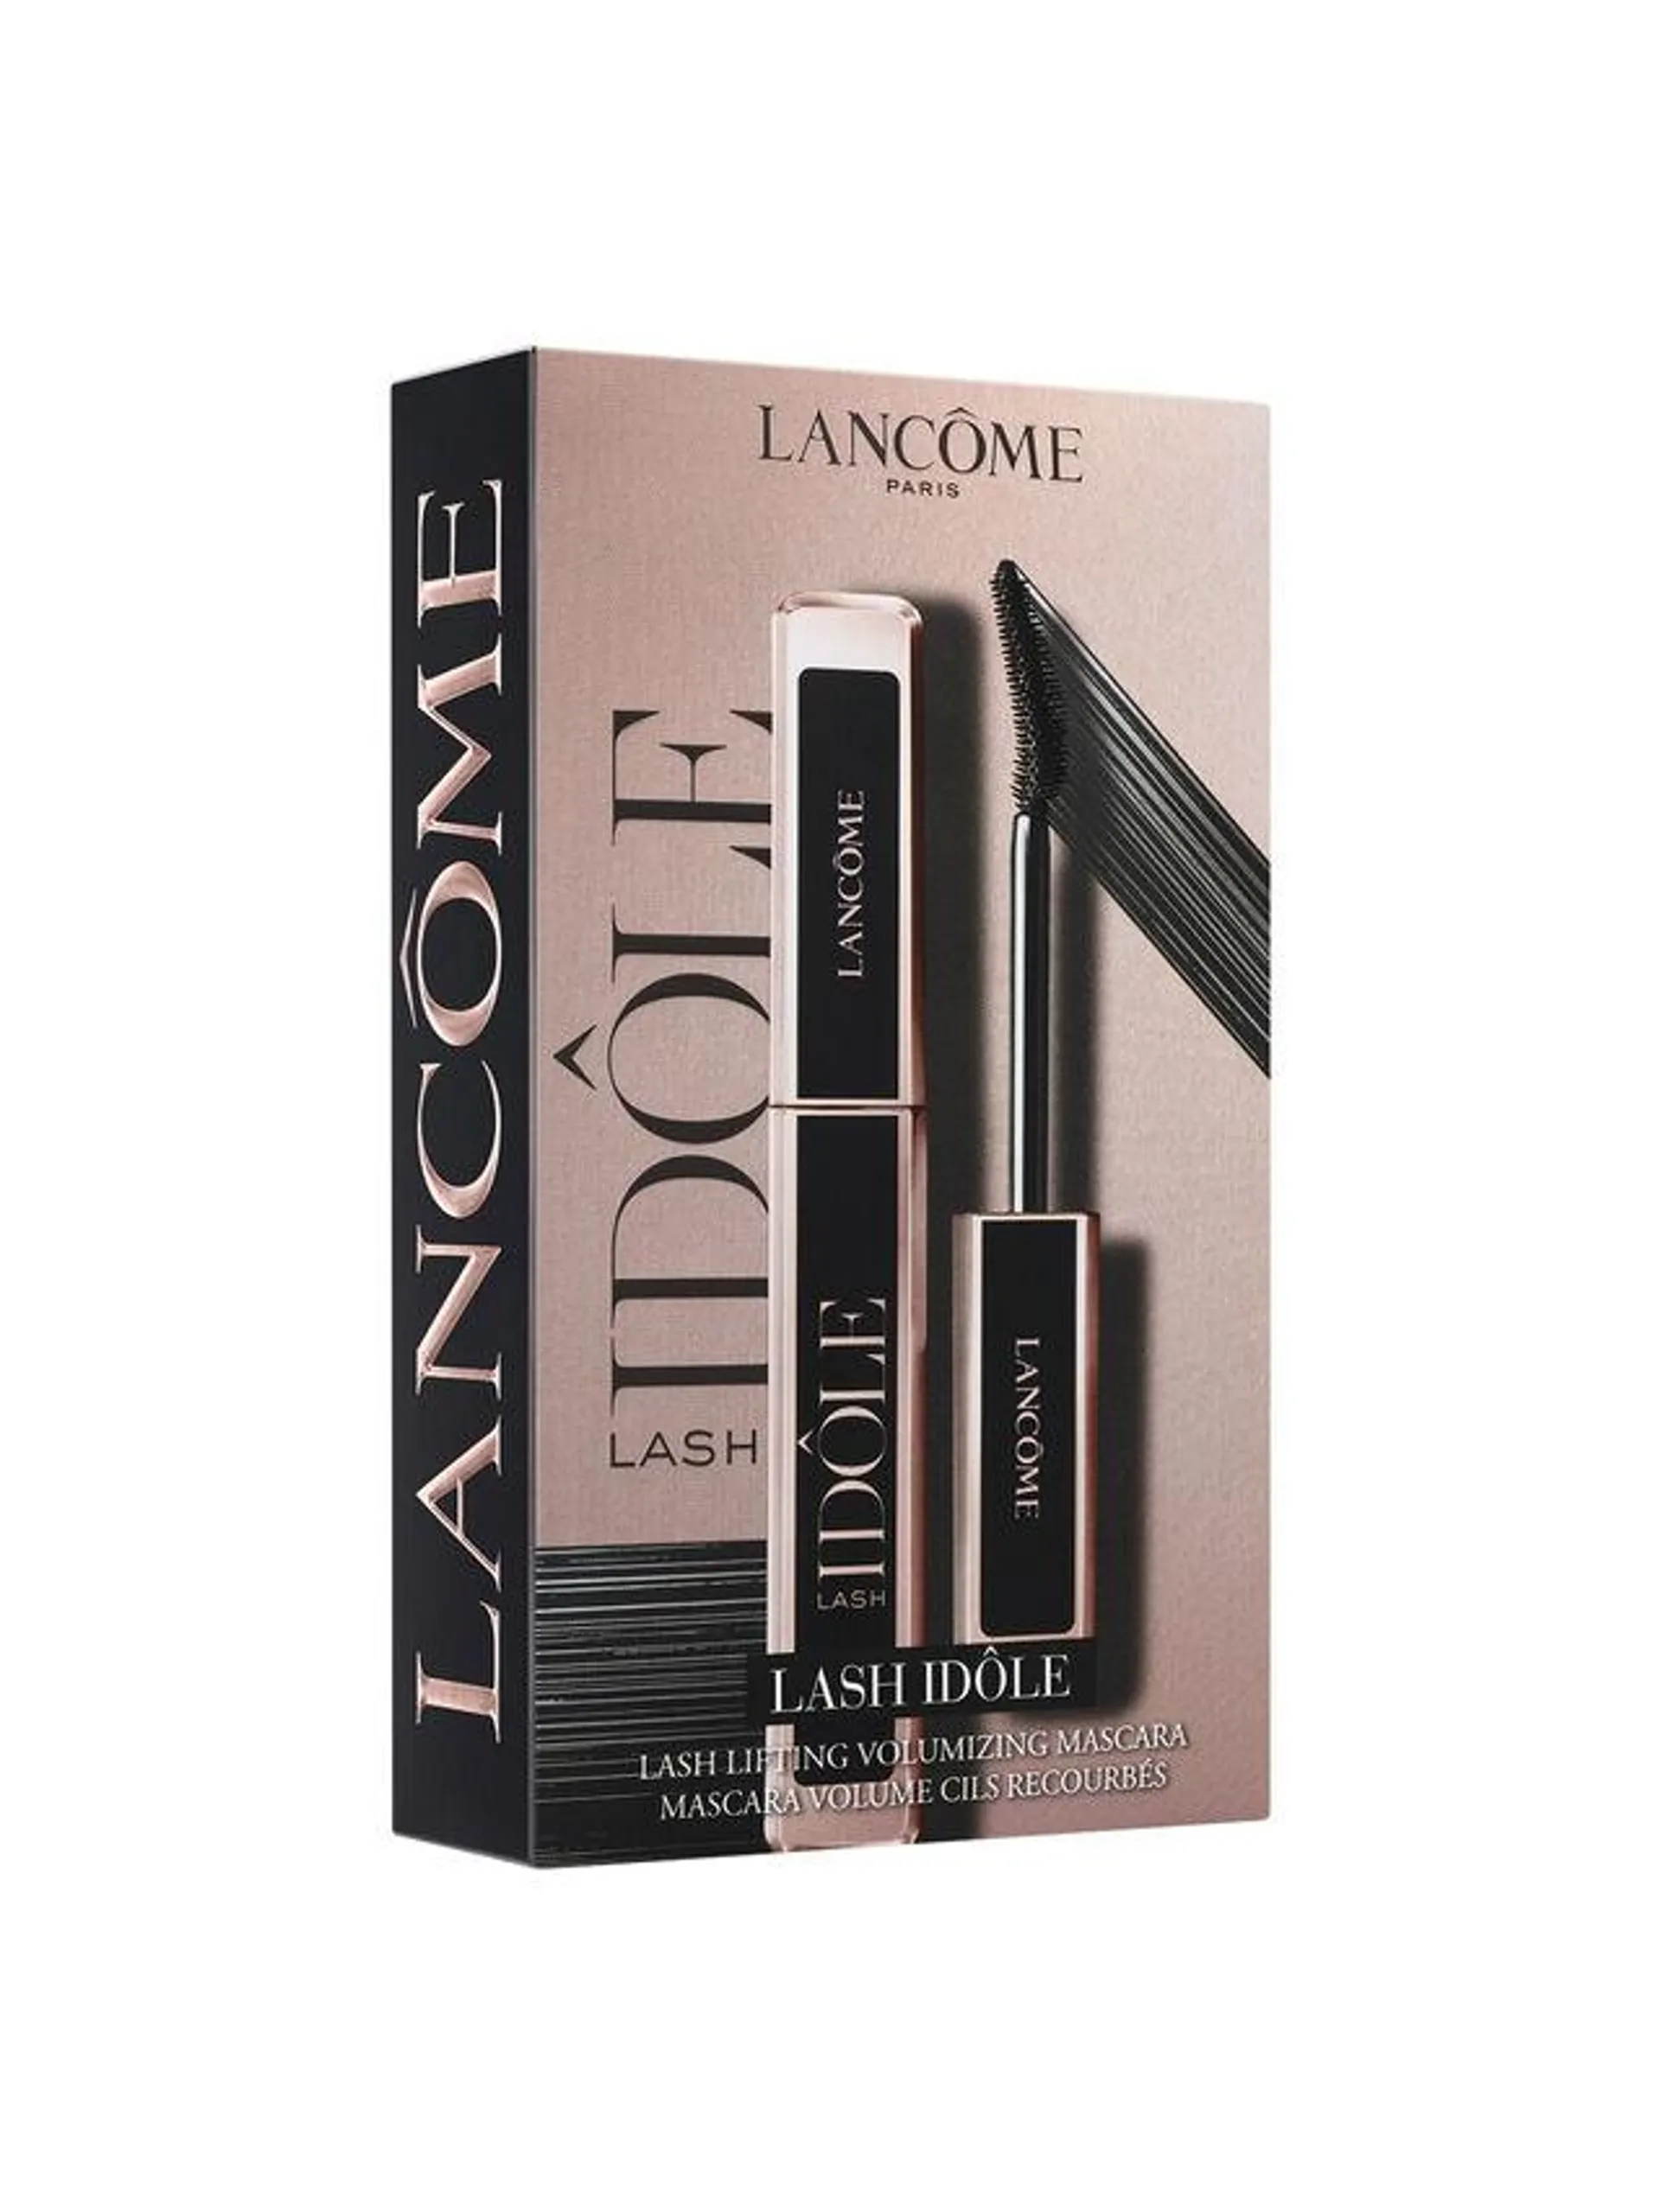 Lancôme Lancôme LASH IDÔLE eye routine gift set